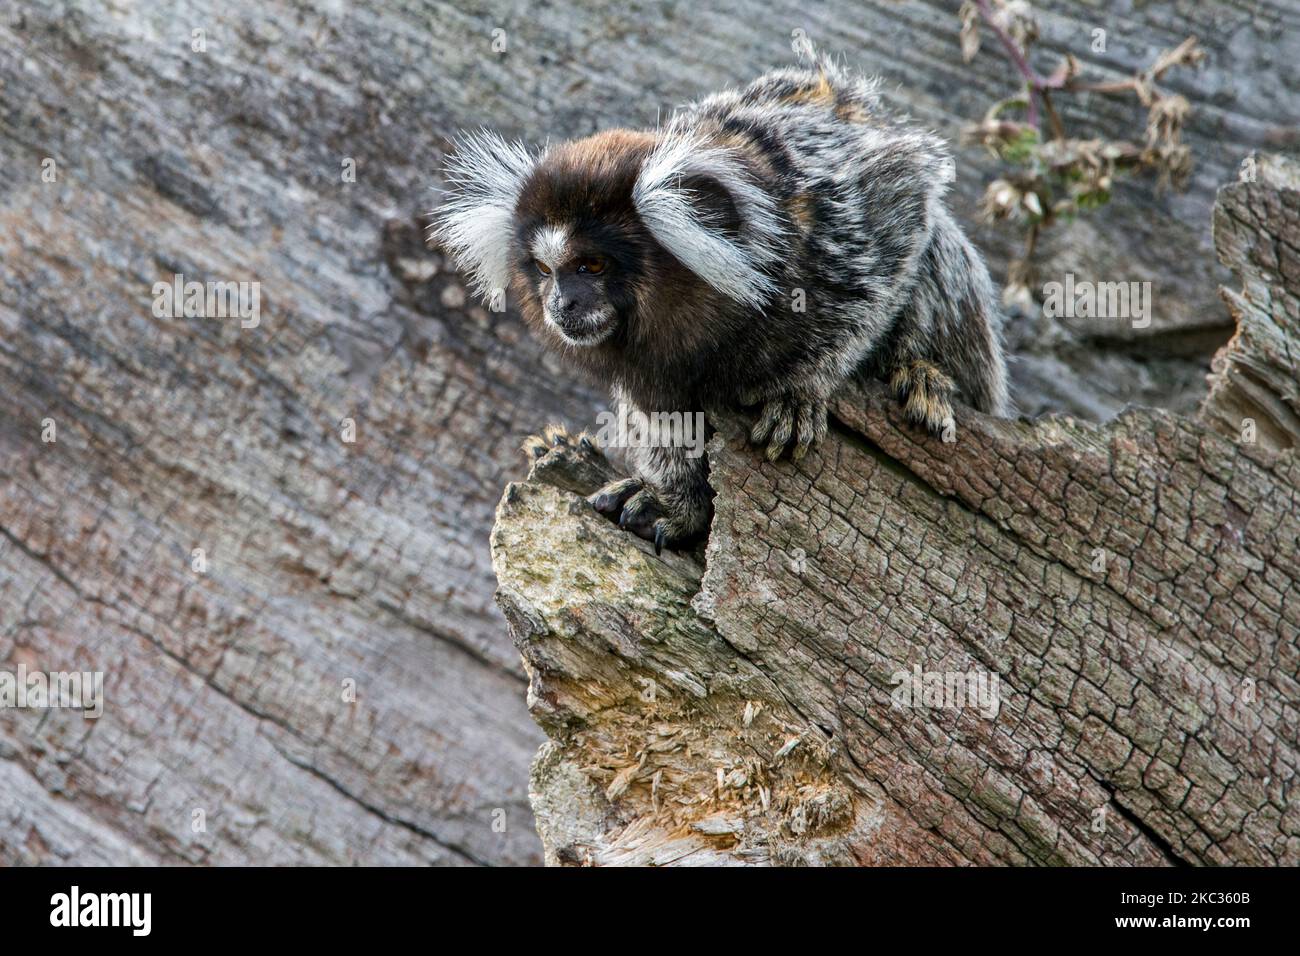 Marmoset comune / marmoset bianco-tufted / marmoset bianco-tufted-orecchio (Callithrix jacchus) nella foresta, scimmia del nuovo mondo nativo del Brasile Foto Stock